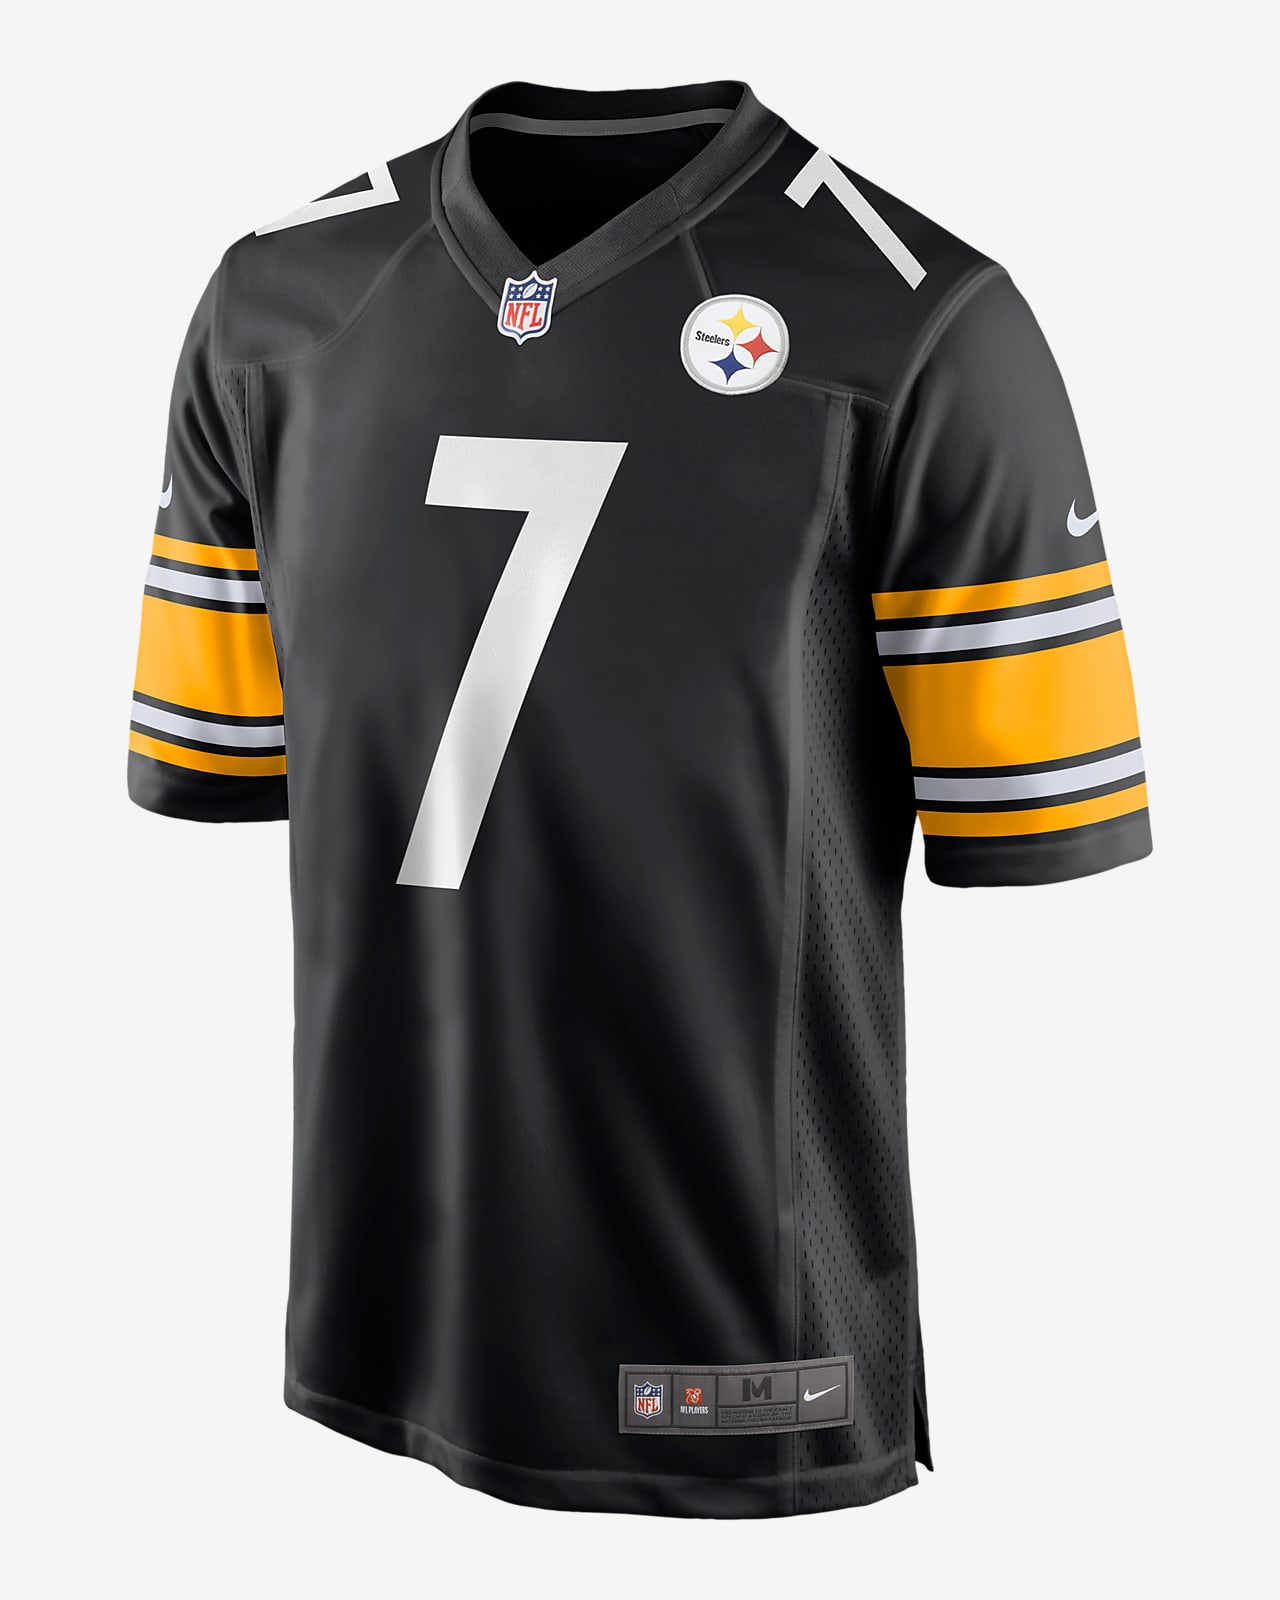 Ανδρική φανέλα αμερικανικού ποδοσφαίρου NFL Pittsburgh Steelers (Ben Roethlisberger)